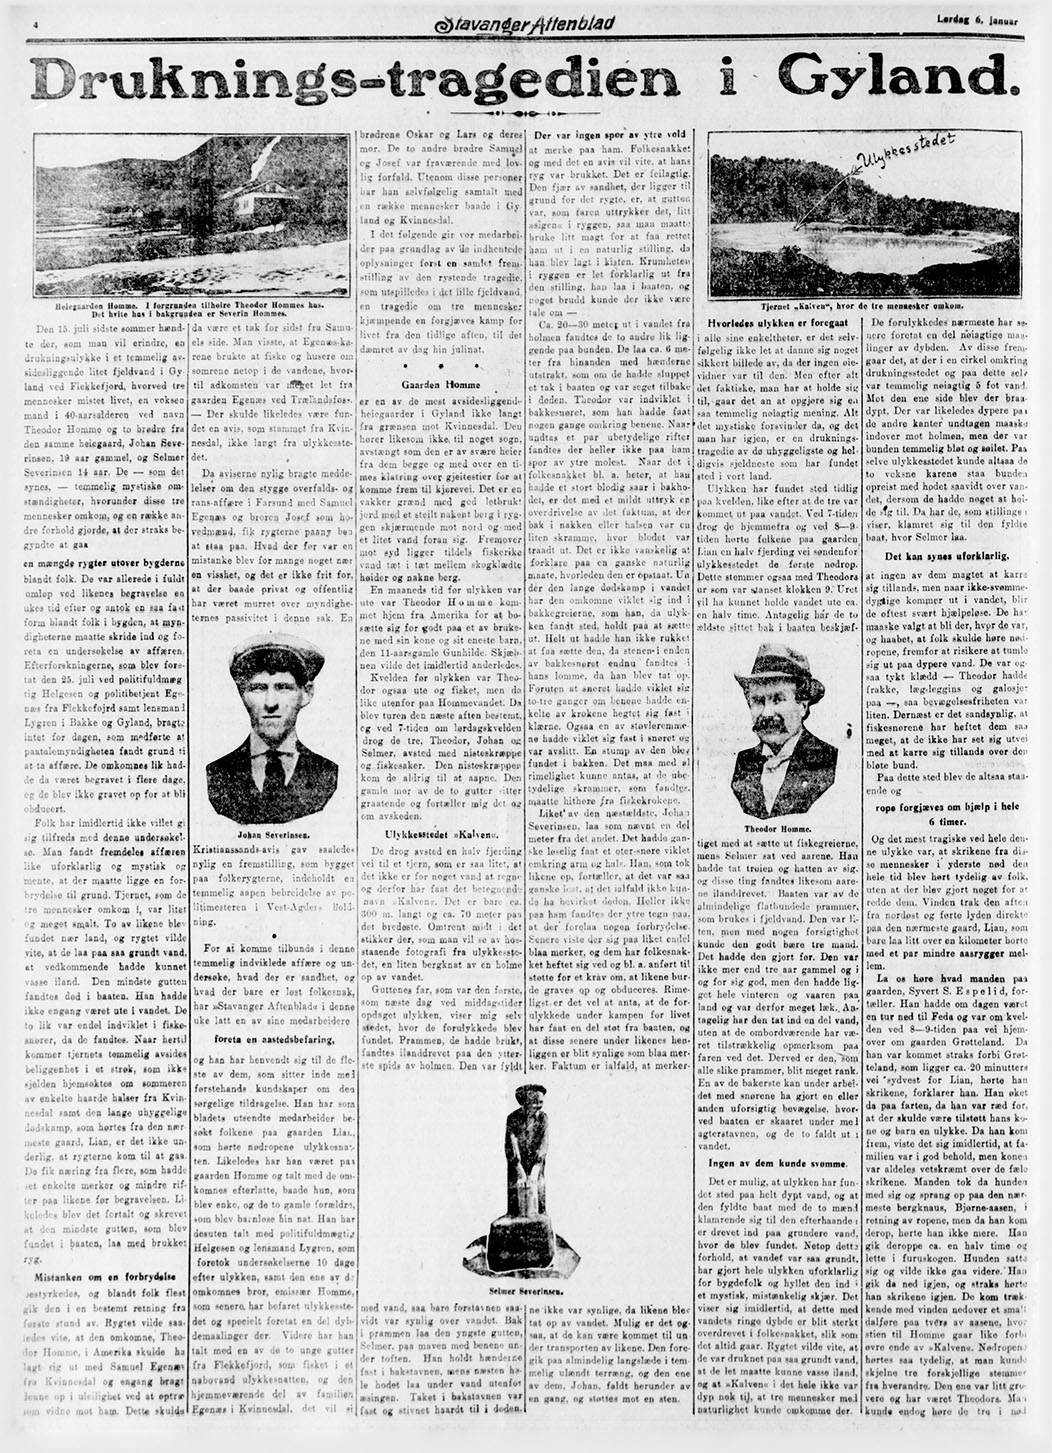 Druknings-tragedien i Gyland (Stavanger Aftenblad, lørdag 6. januar 1923)